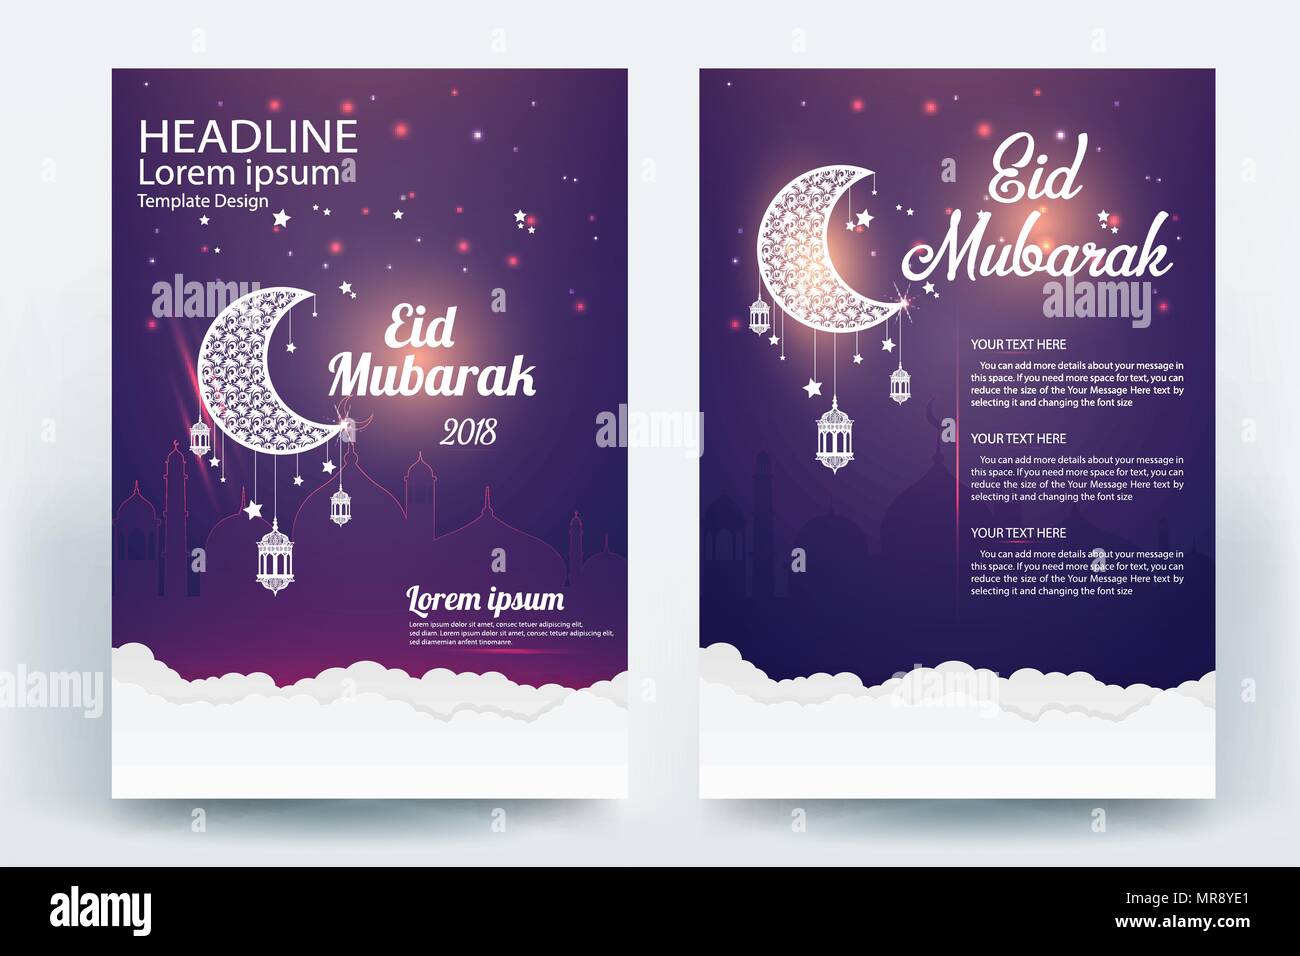 Schone Eid Mubarak Flyer Broschure Vector Template Design Stock Vektorgrafik Alamy